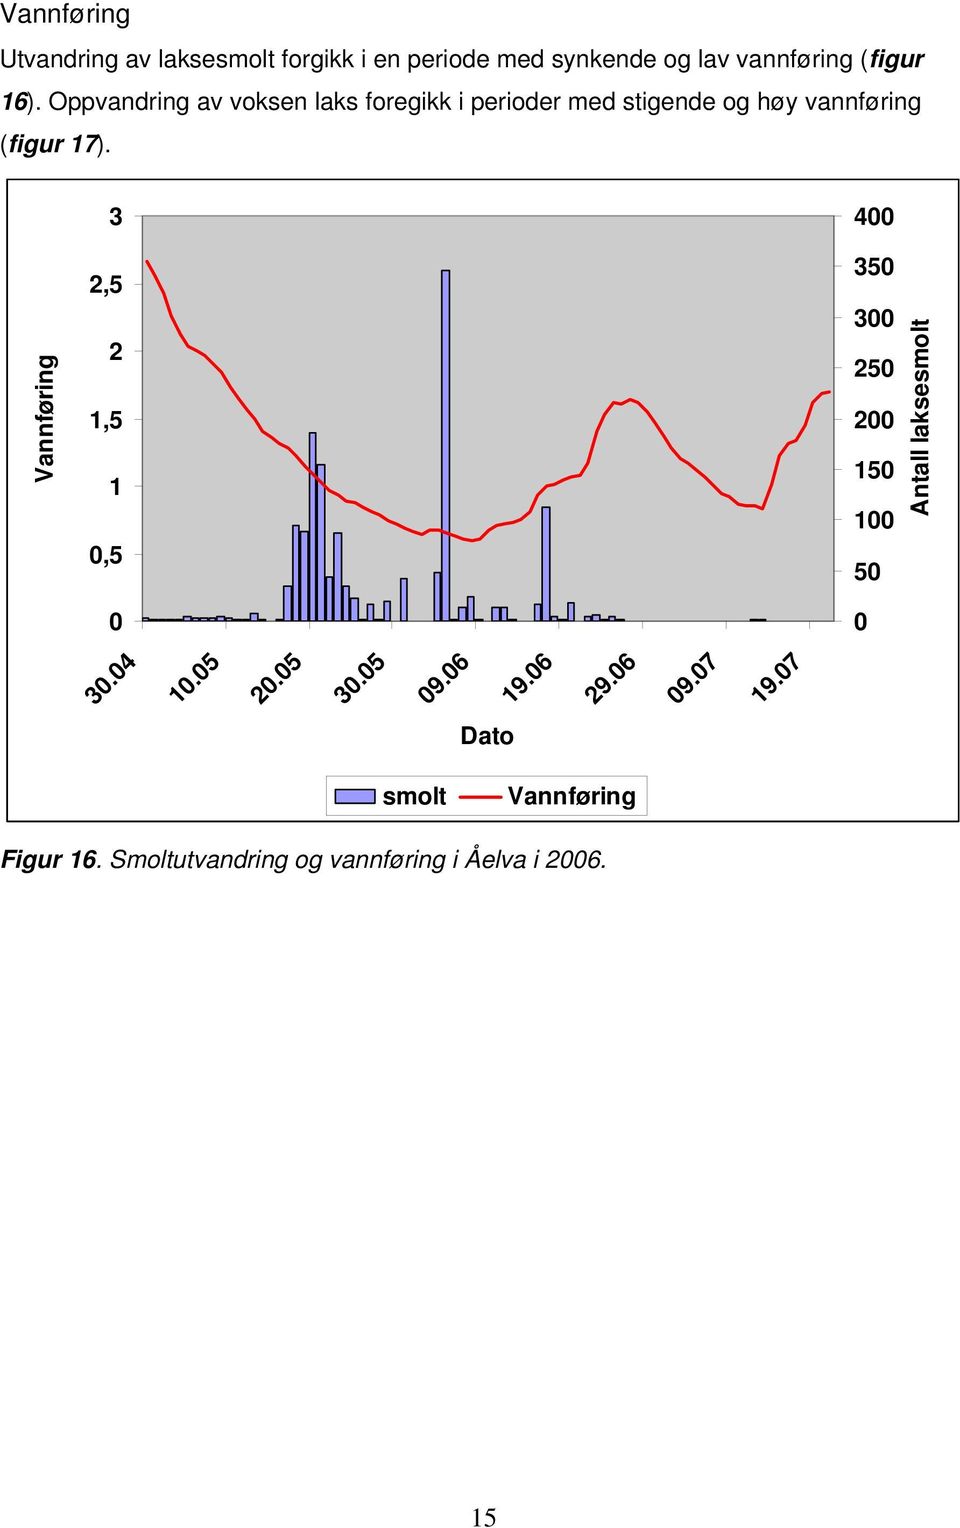 Oppvandring av voksen laks foregikk i perioder med stigende og høy vannføring (figur 17).